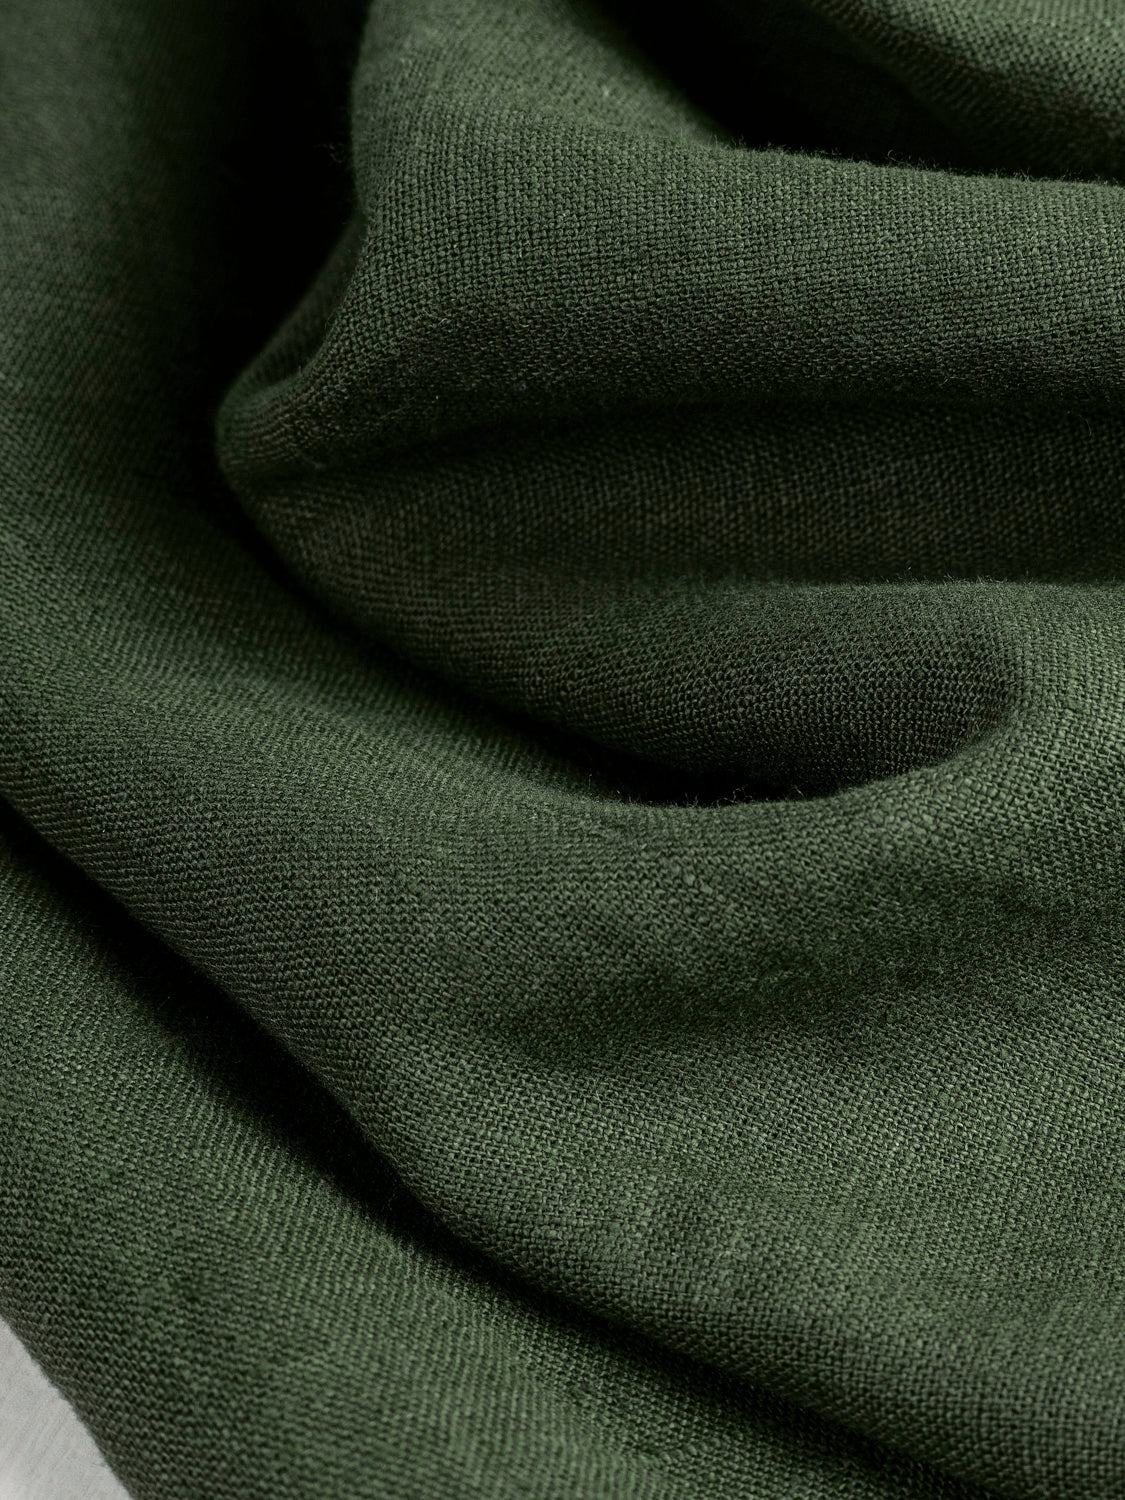 Midweight European Linen - Hunter Green | Core Fabrics